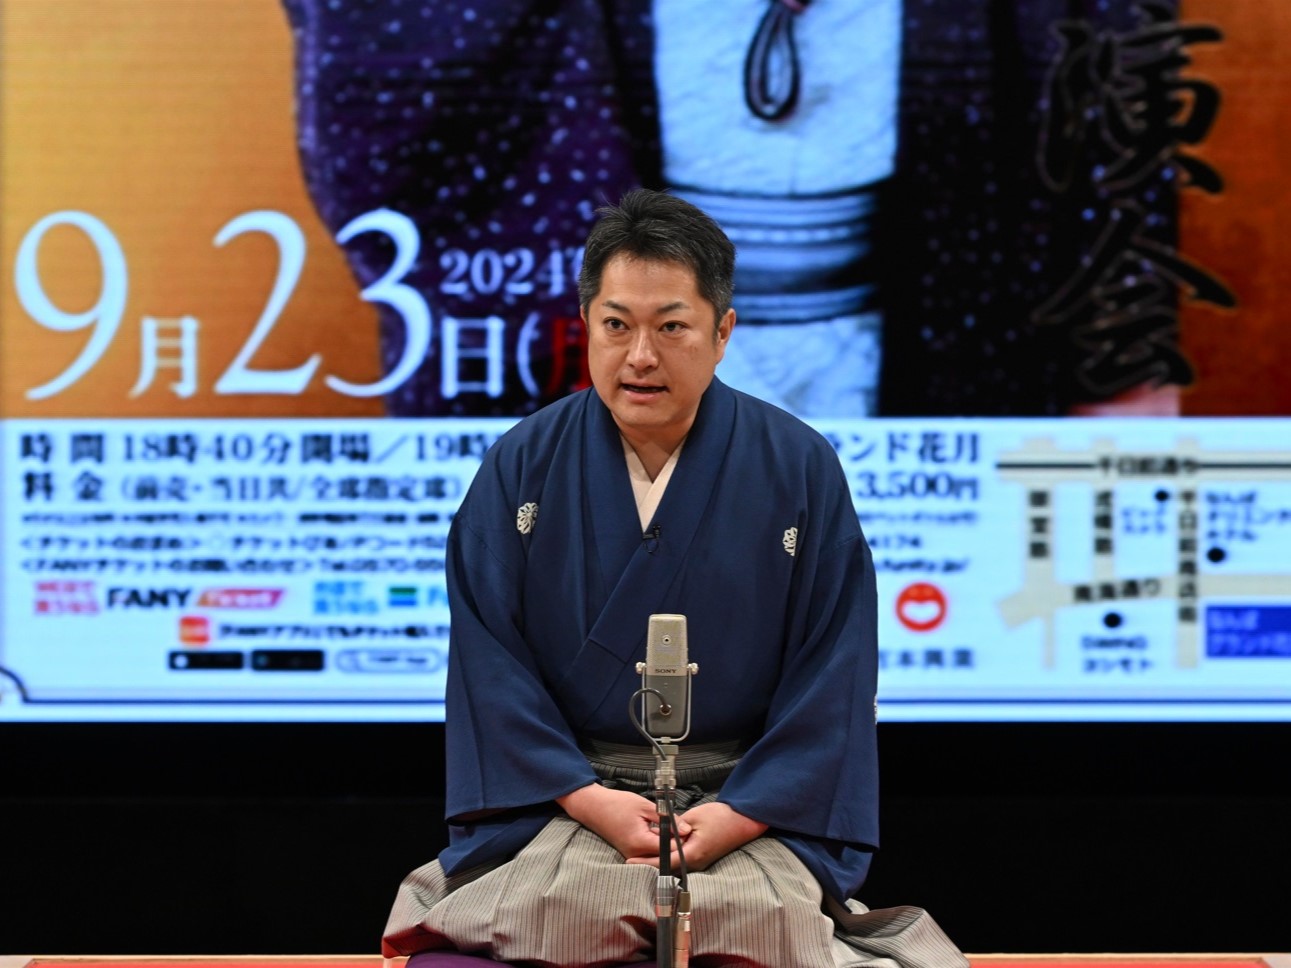 “芸歴30周年”林家菊丸が記念独演会の意気込み語る「全国のどこでも自分一人で独演会ができる噺家に」